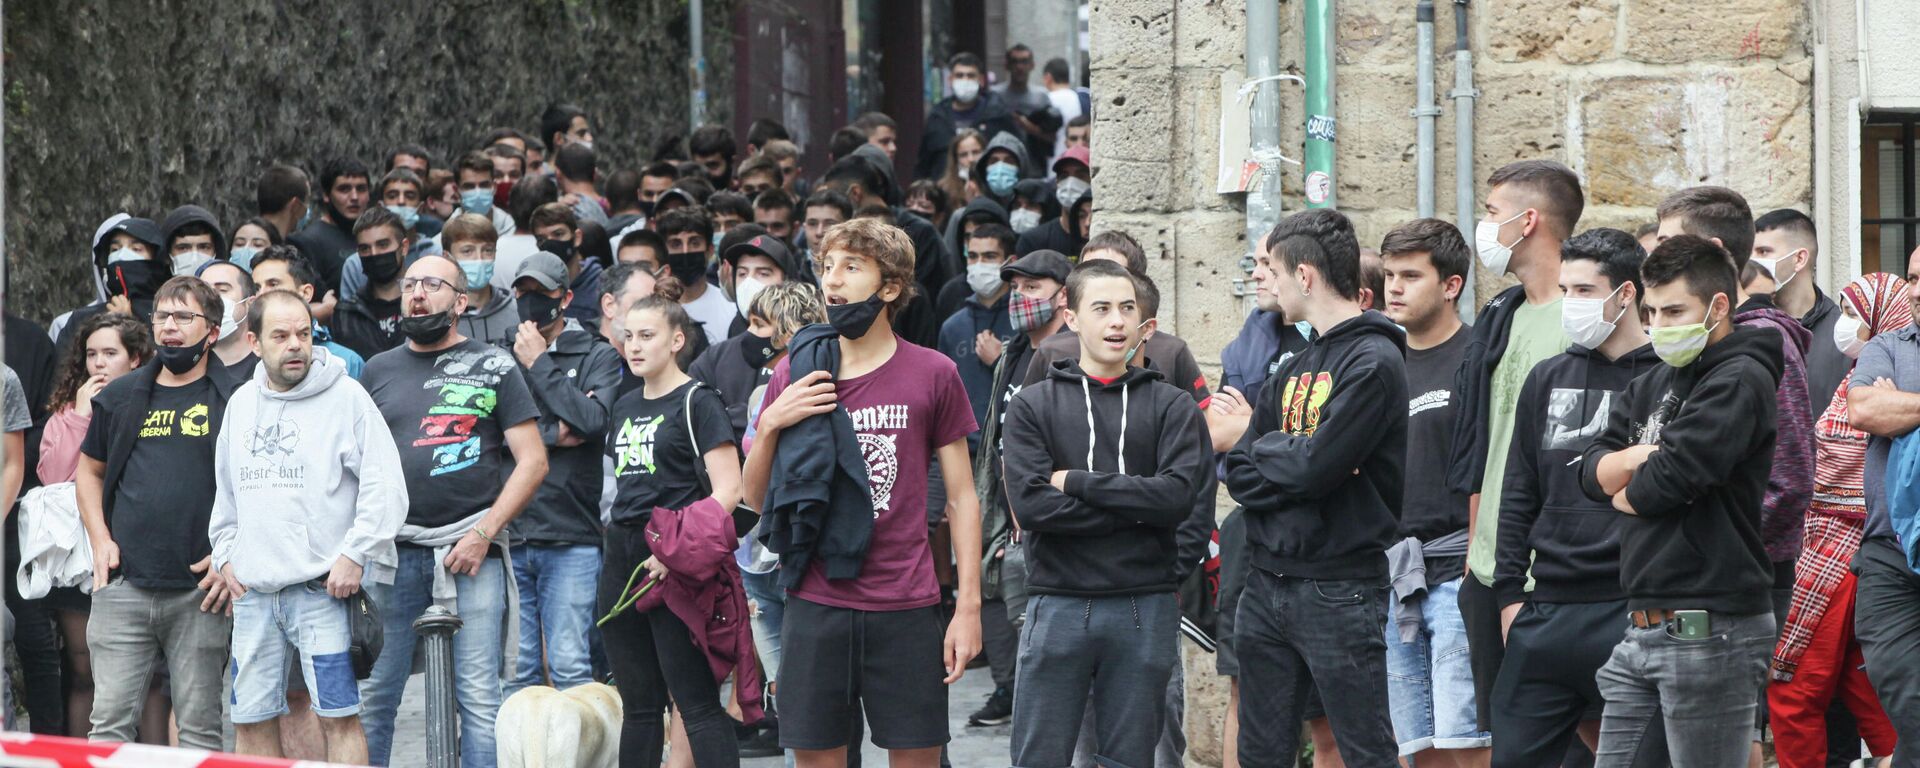 Varias personas participan en una concentración convocada por Sare Antifascista contra la presencia de Vox en otra concentración en Arrasate, a 18 de septiembre de 2021, en Arrasate (Mondragón), Guipúzcoa, Euskadi (España), el 18 de septiembre de 2021  - Sputnik Mundo, 1920, 18.09.2021